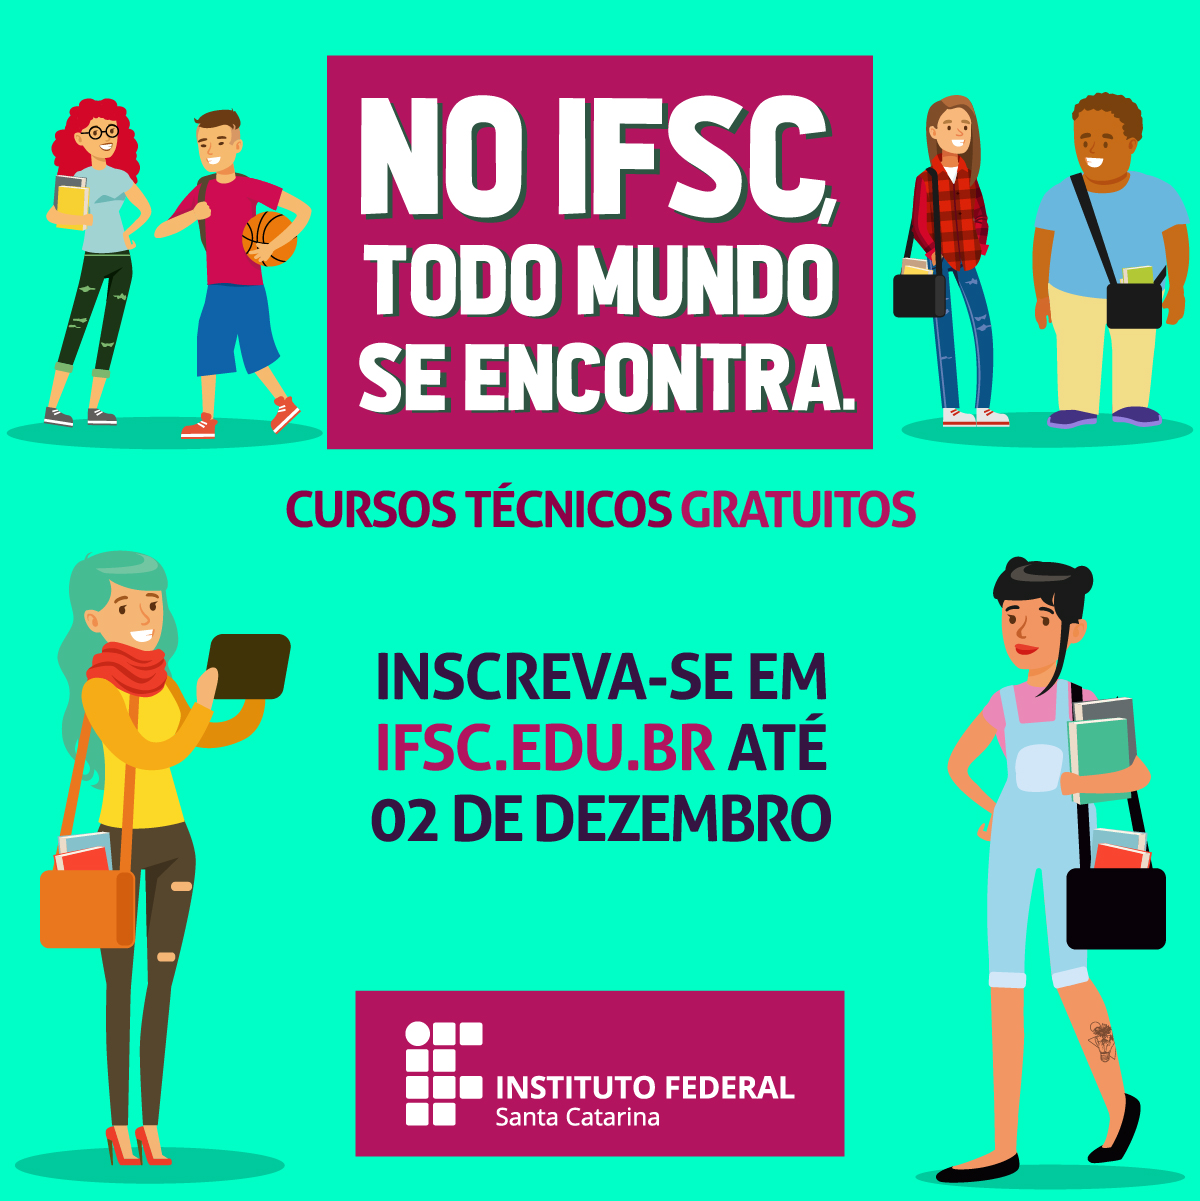 Cursos Técnicos - Portal do IFSC